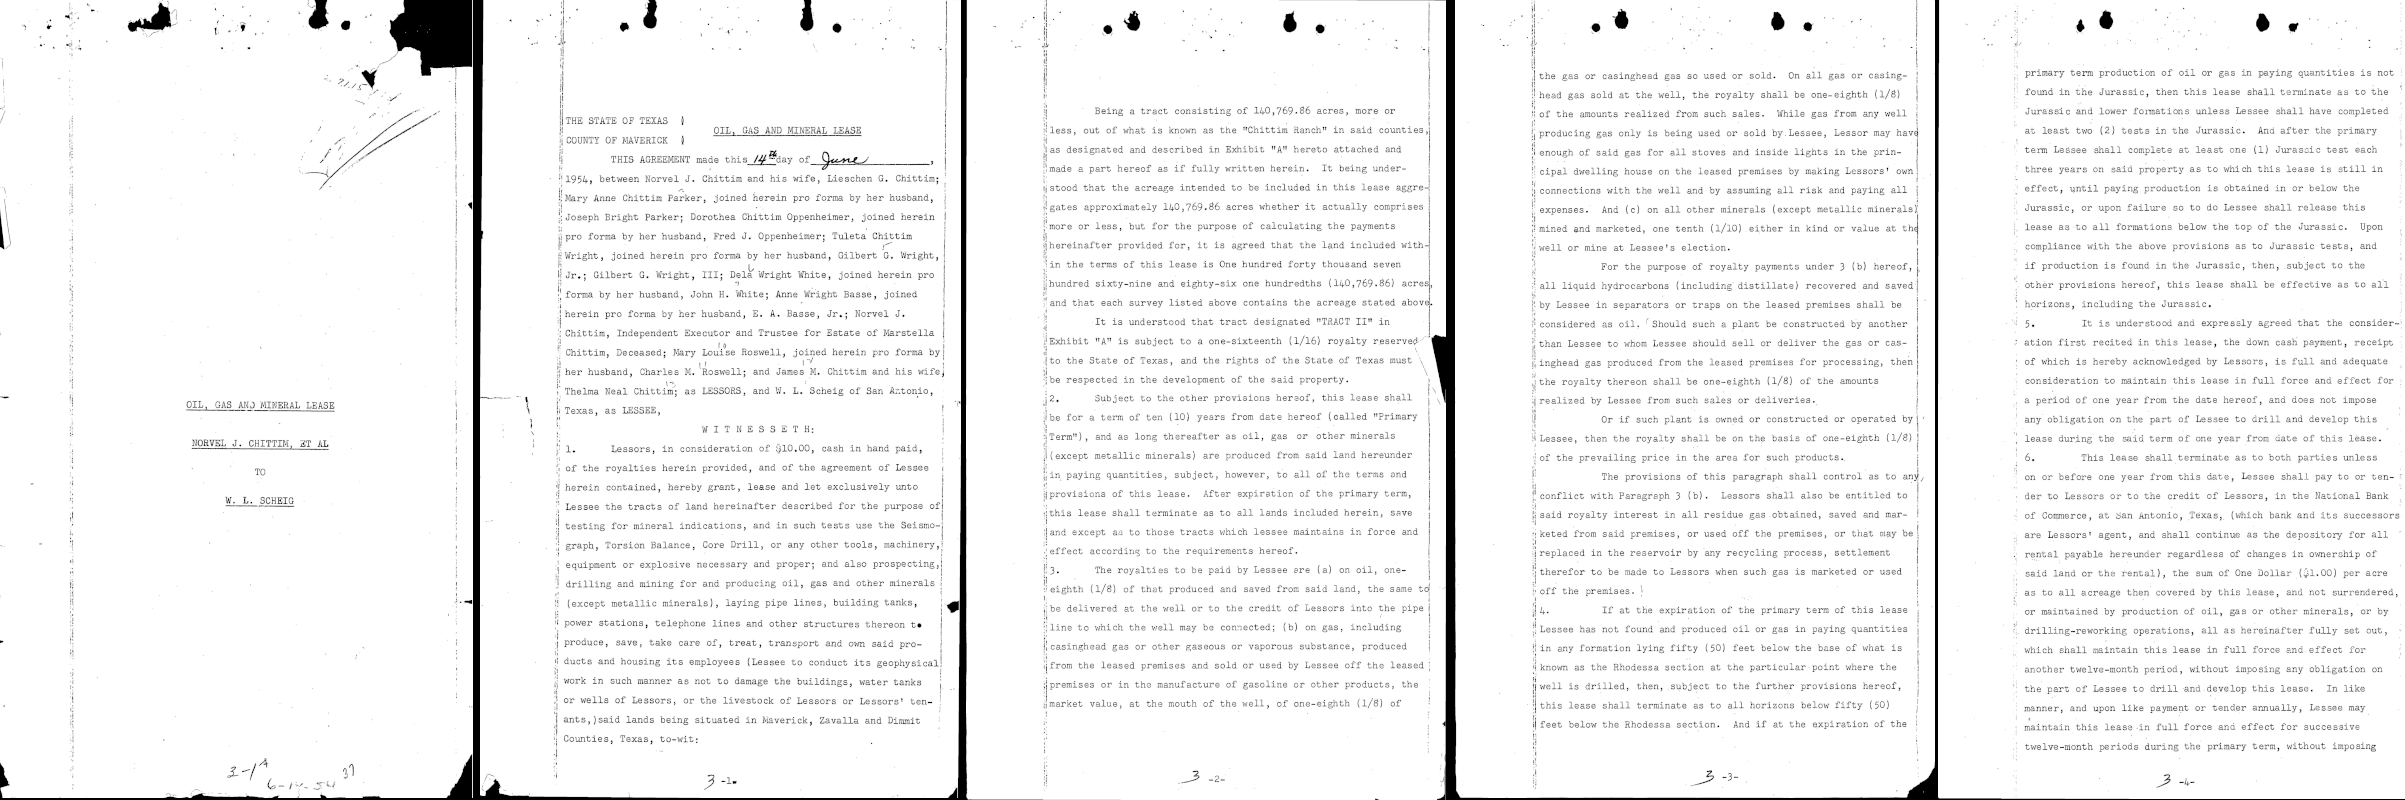 lima halaman pertama pada file pdf